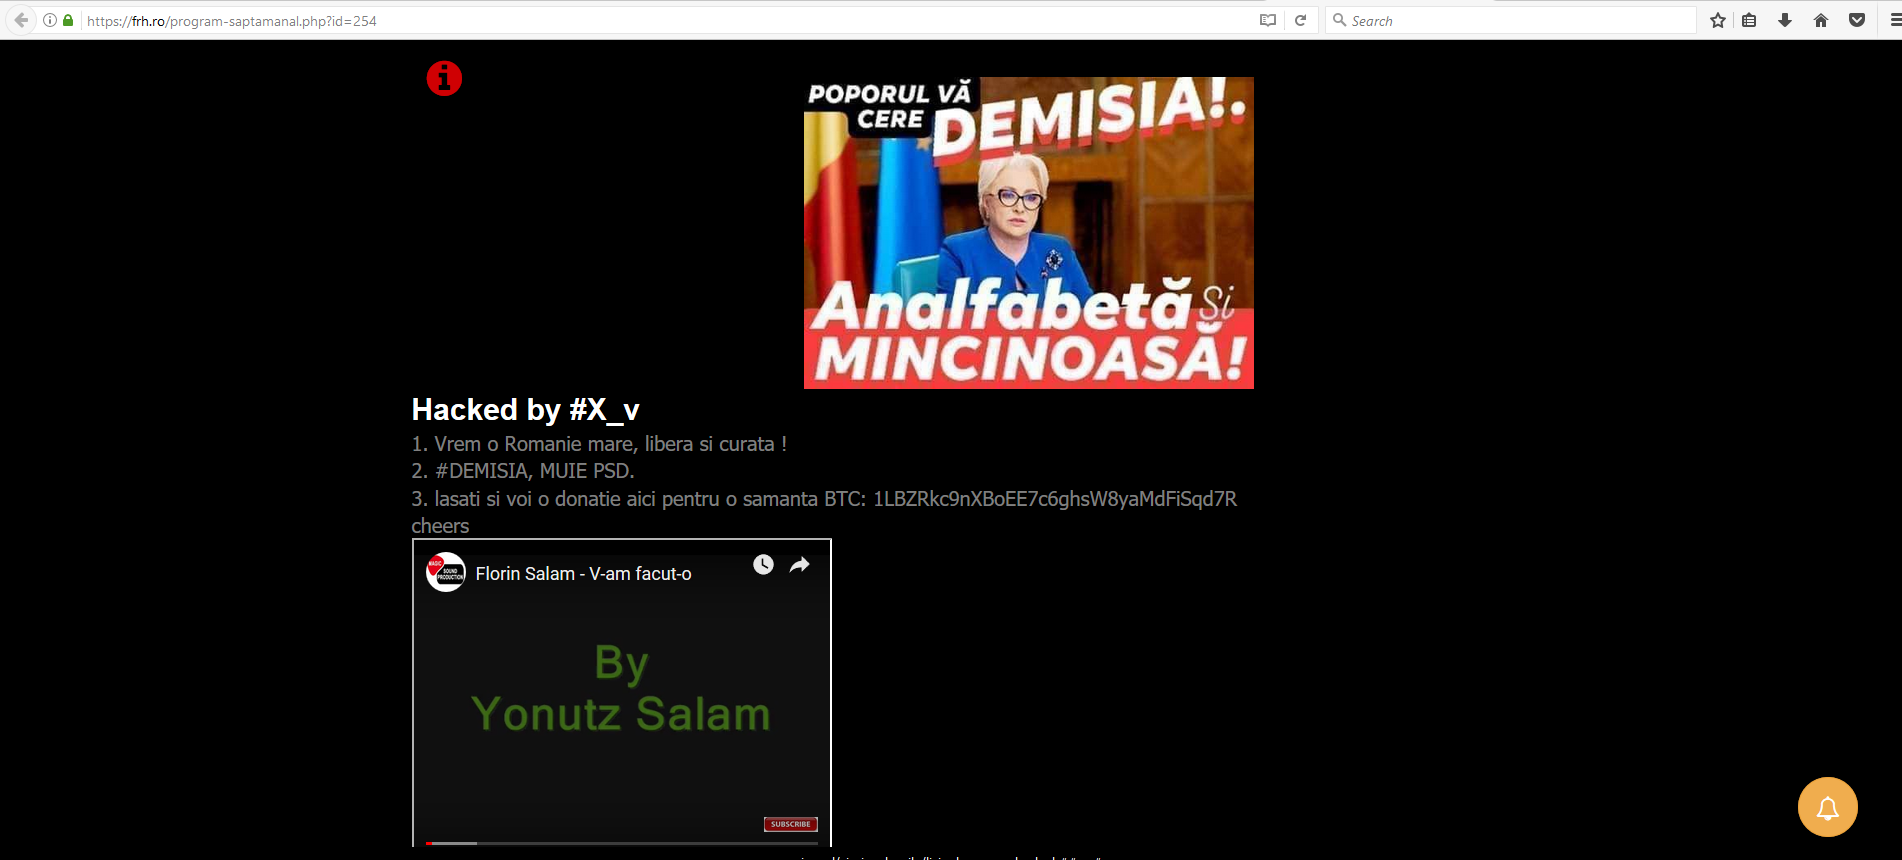 Hackerii nou PSD-ul. Site-ul FRH a spart: "Demisia, analfabeta mincinoasa" - Aktual24